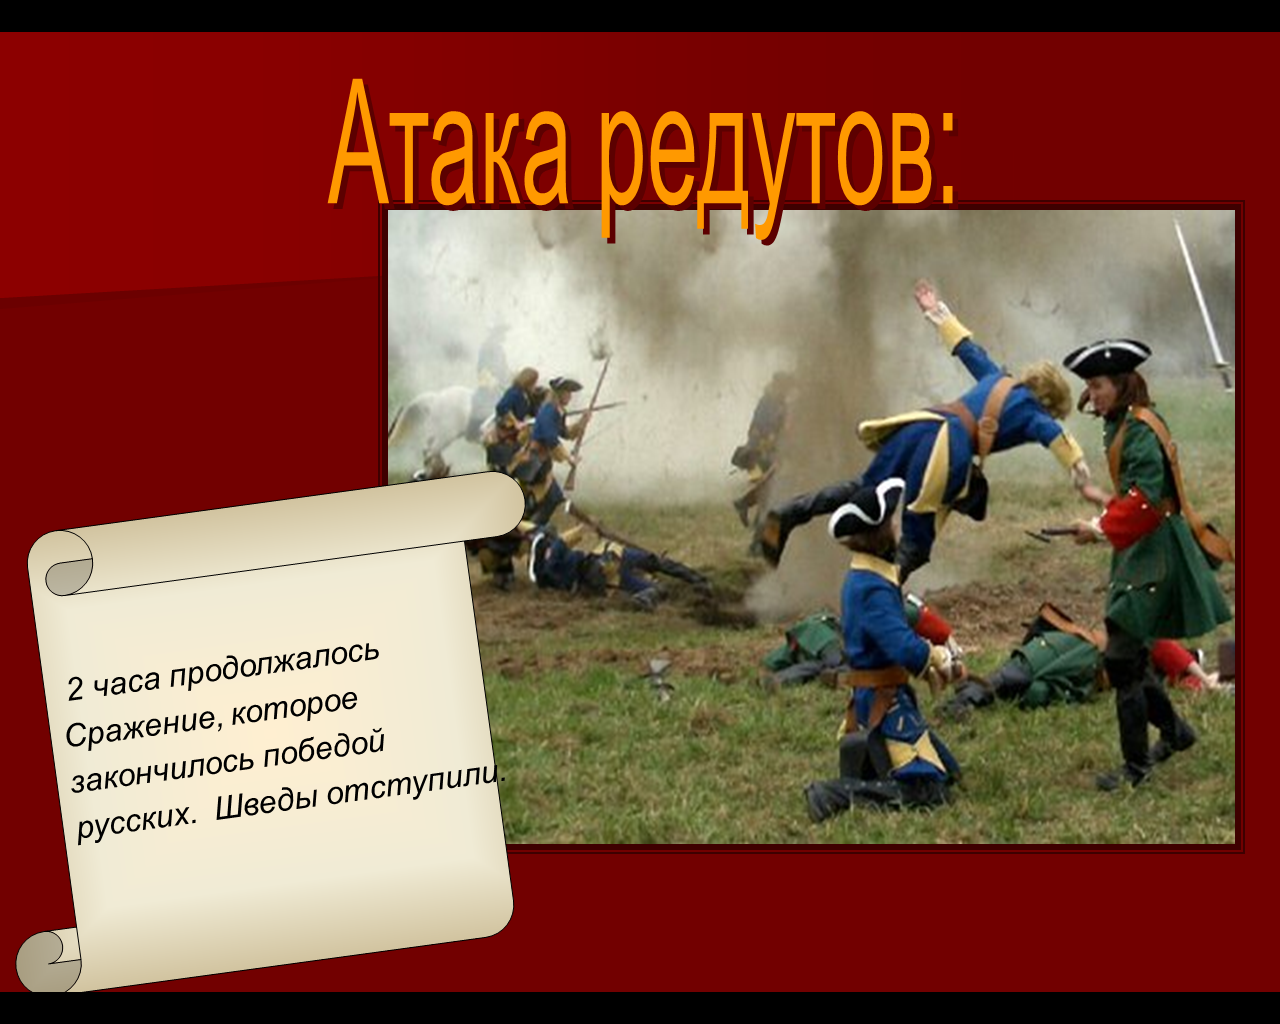 Конспект урока Полтавская битва